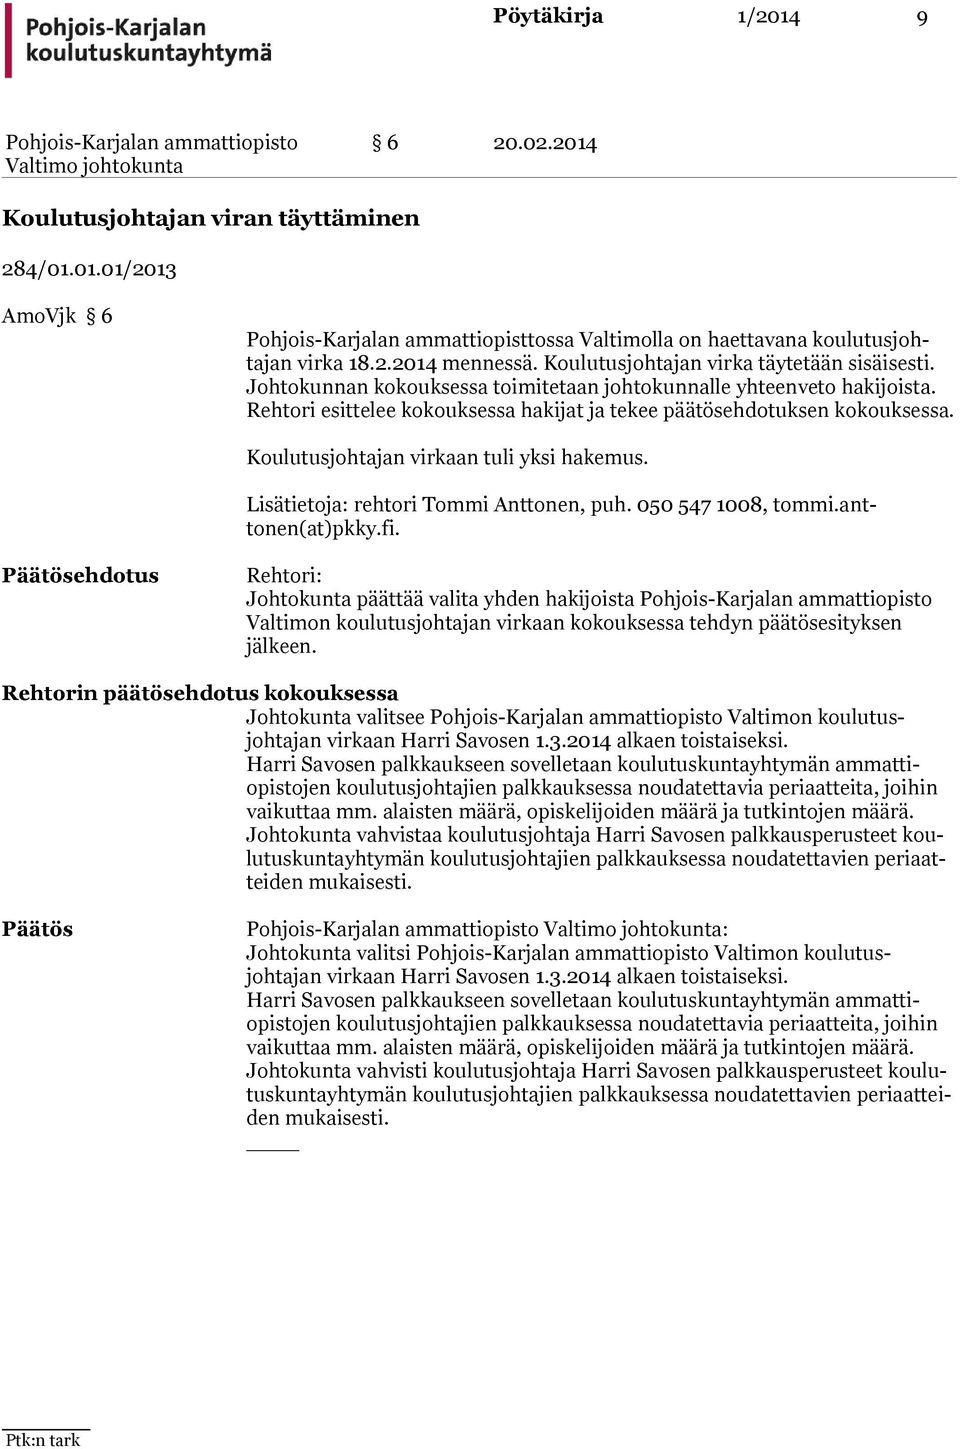 Koulutusjohtajan virkaan tuli yksi hakemus. Lisätietoja: rehtori Tommi Anttonen, puh. 050 547 1008, tommi.anttonen(at)pkky.fi.